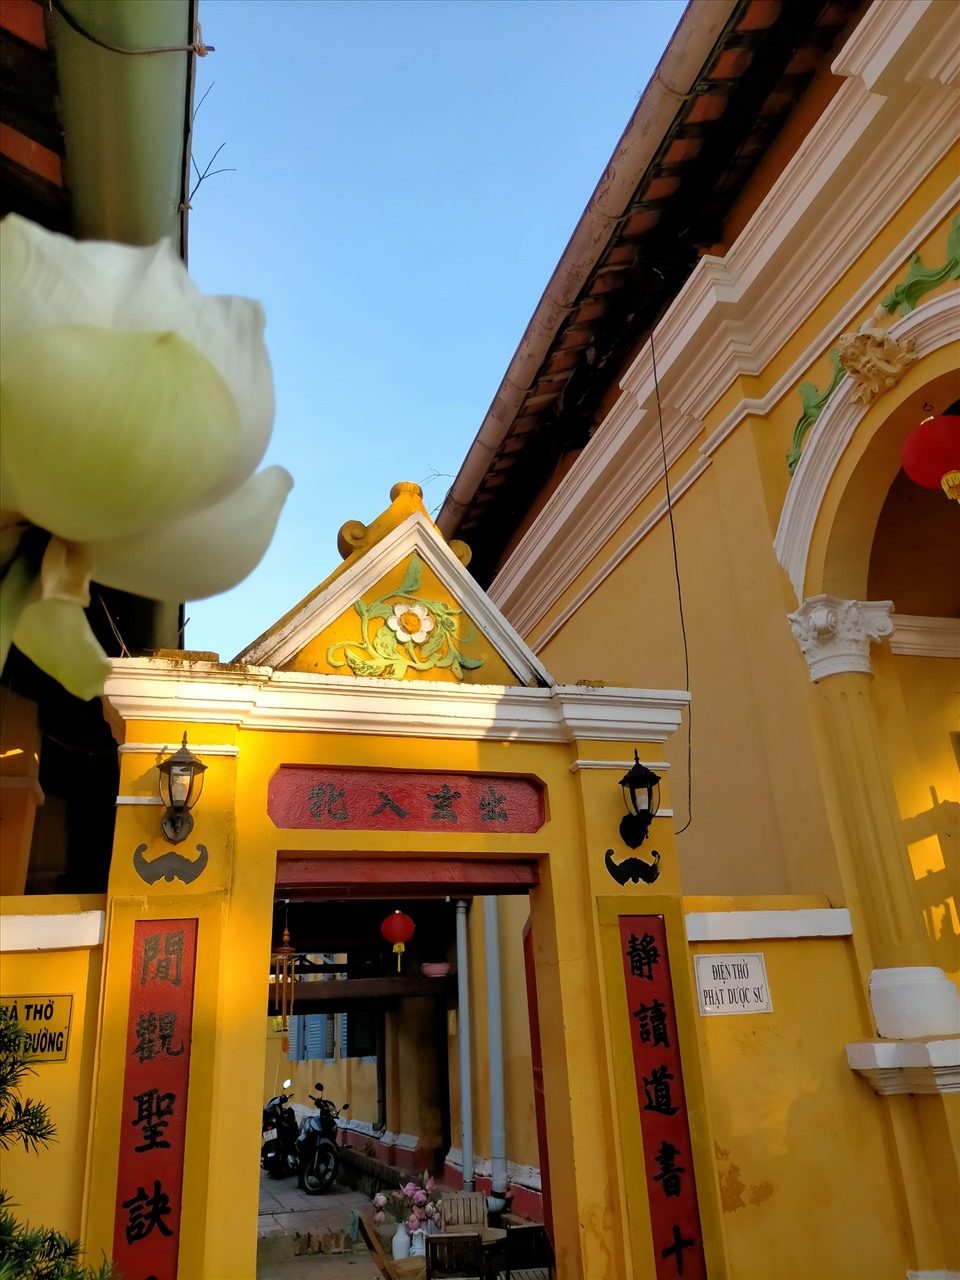 Lối đi phía sau chánh điện có hai câu đối chữ Hán nhưng lại được gắn đôi đèn điện đậm nét phương Tây.  Chùa mang màu vàng đậm, đặc trưng của Phật giáo phương Đông nhưng điểm tích hoa văn thì sử dụng kiến trúc châu Âu.